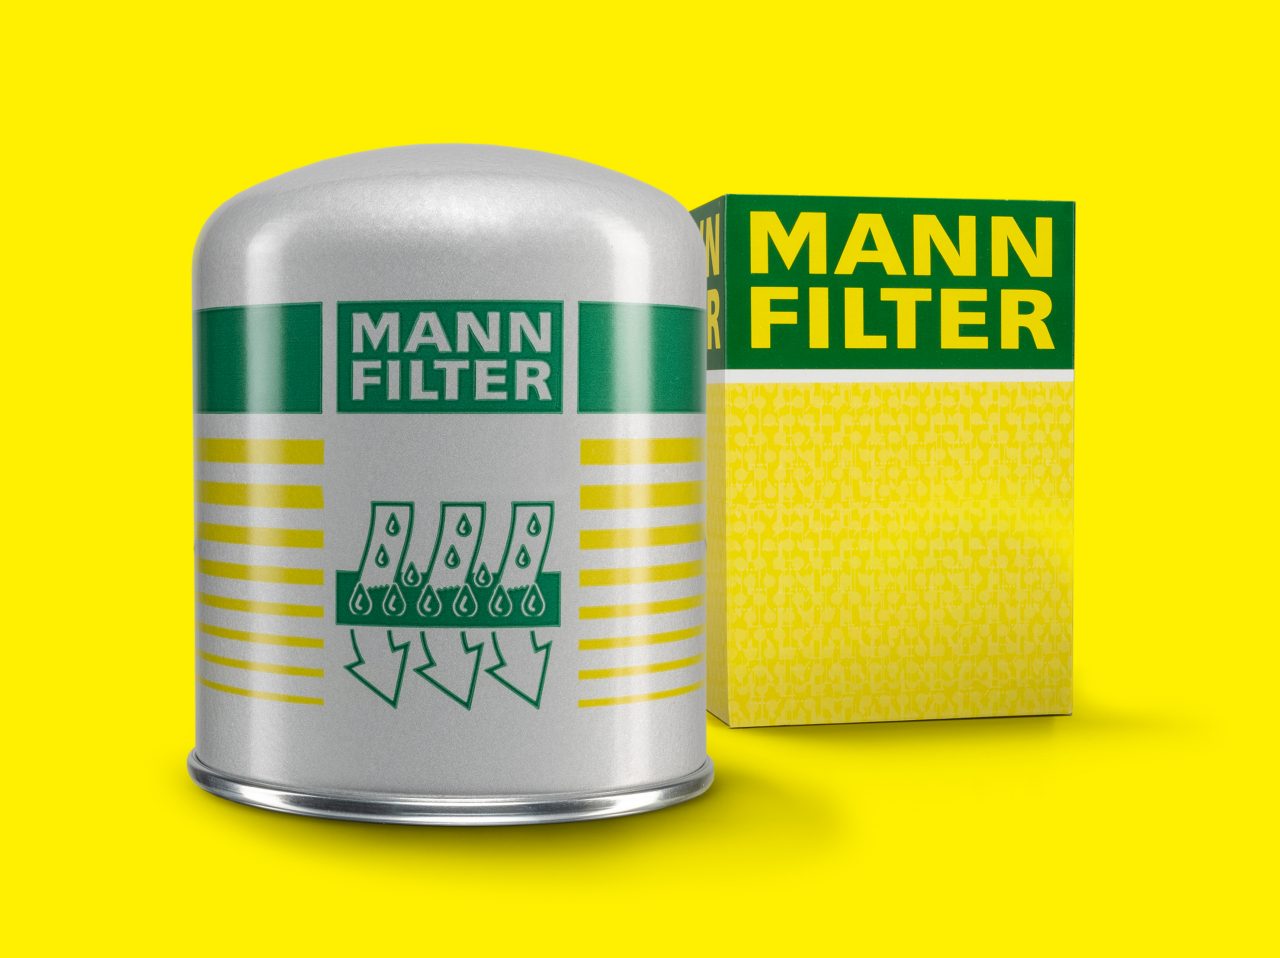 https://www.mann-filter.com/content/mann-filter/mann-filter-com/uk-en/parts/special-applications/_jcr_content/root/container/teaser_content_grid/item0.coreimg.jpeg/1686037103520/mann-filter-trockenmittelbox-tb13941.jpeg